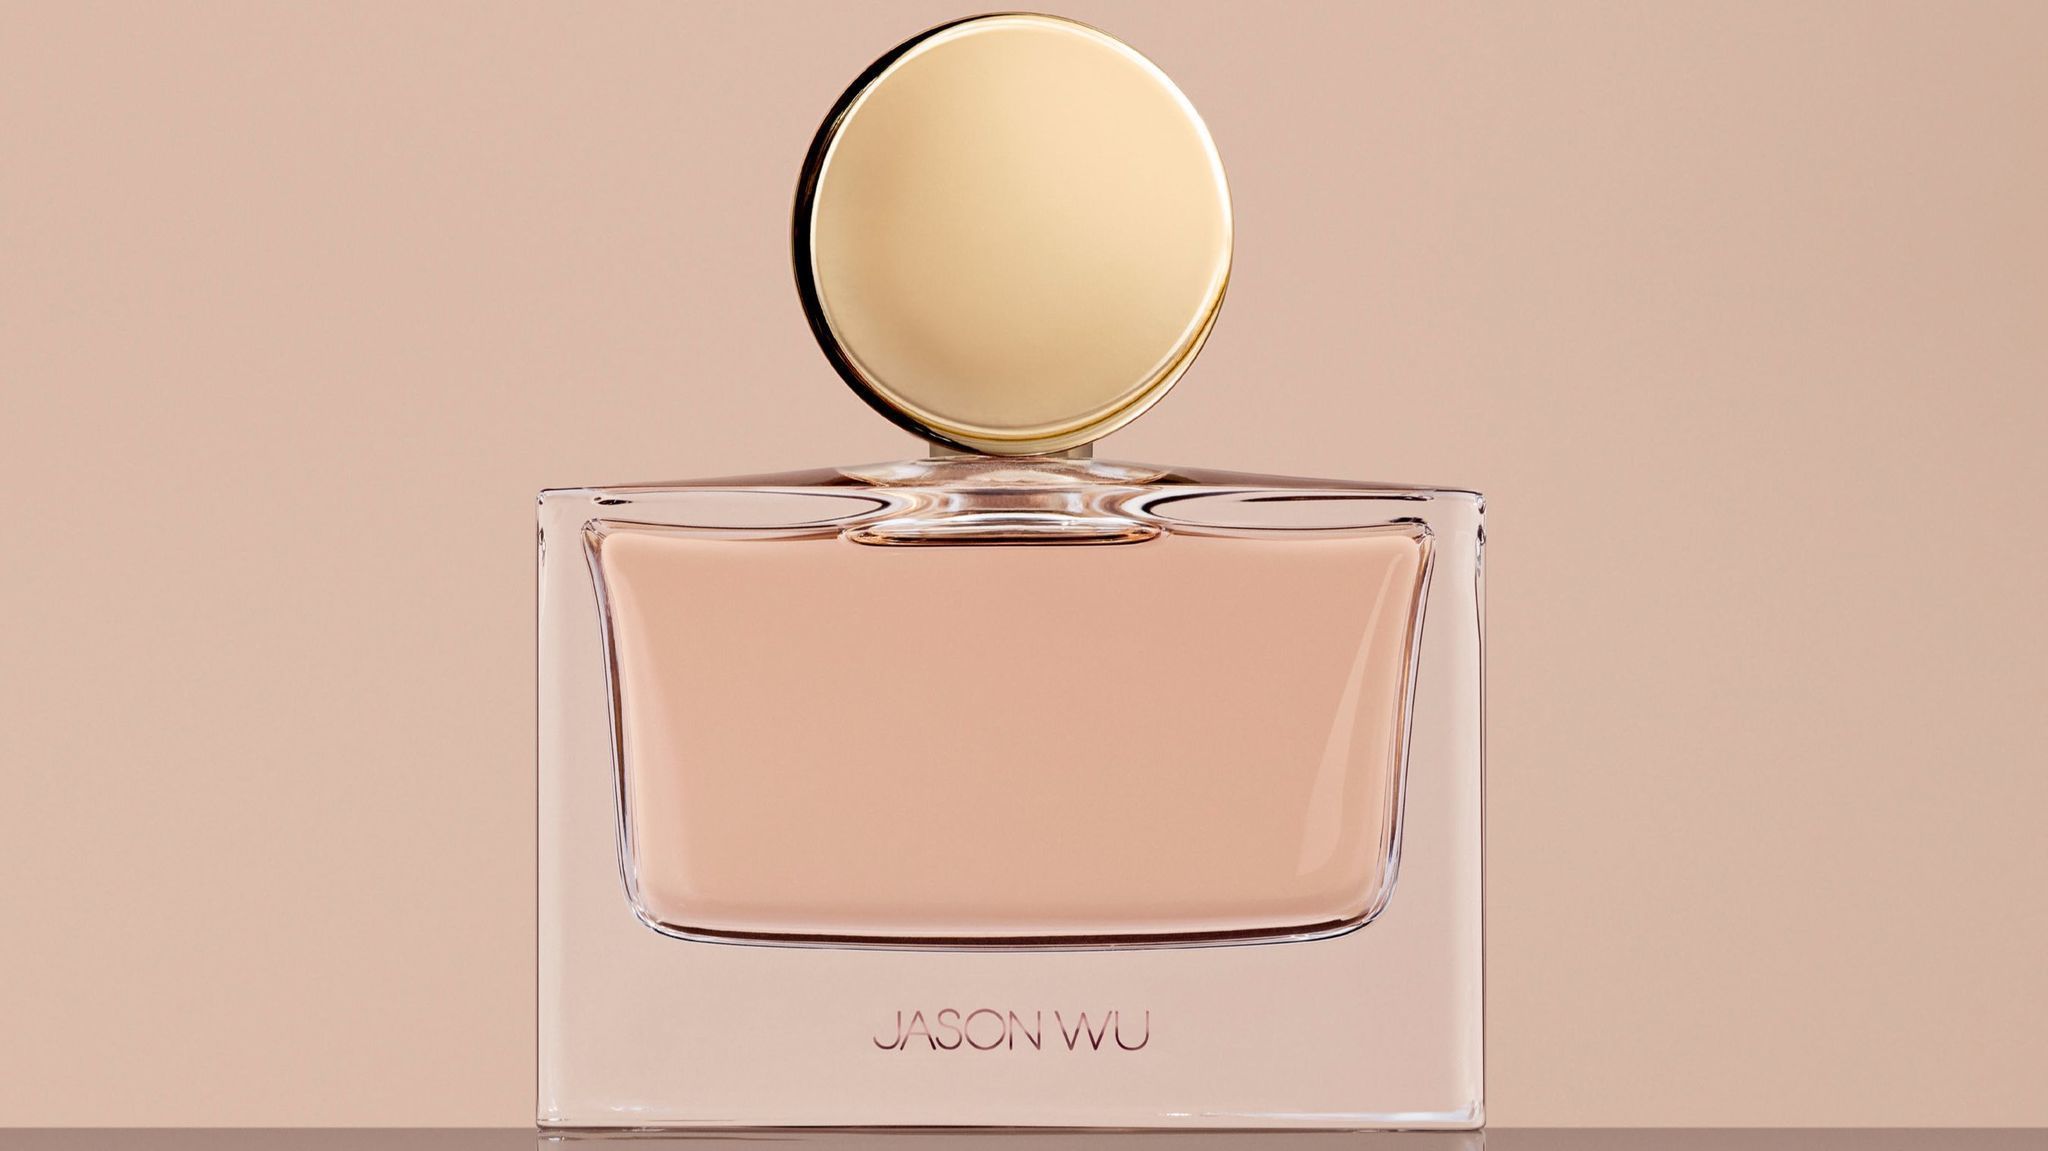 Jason Wu to debut namesake fragrance - LA Times